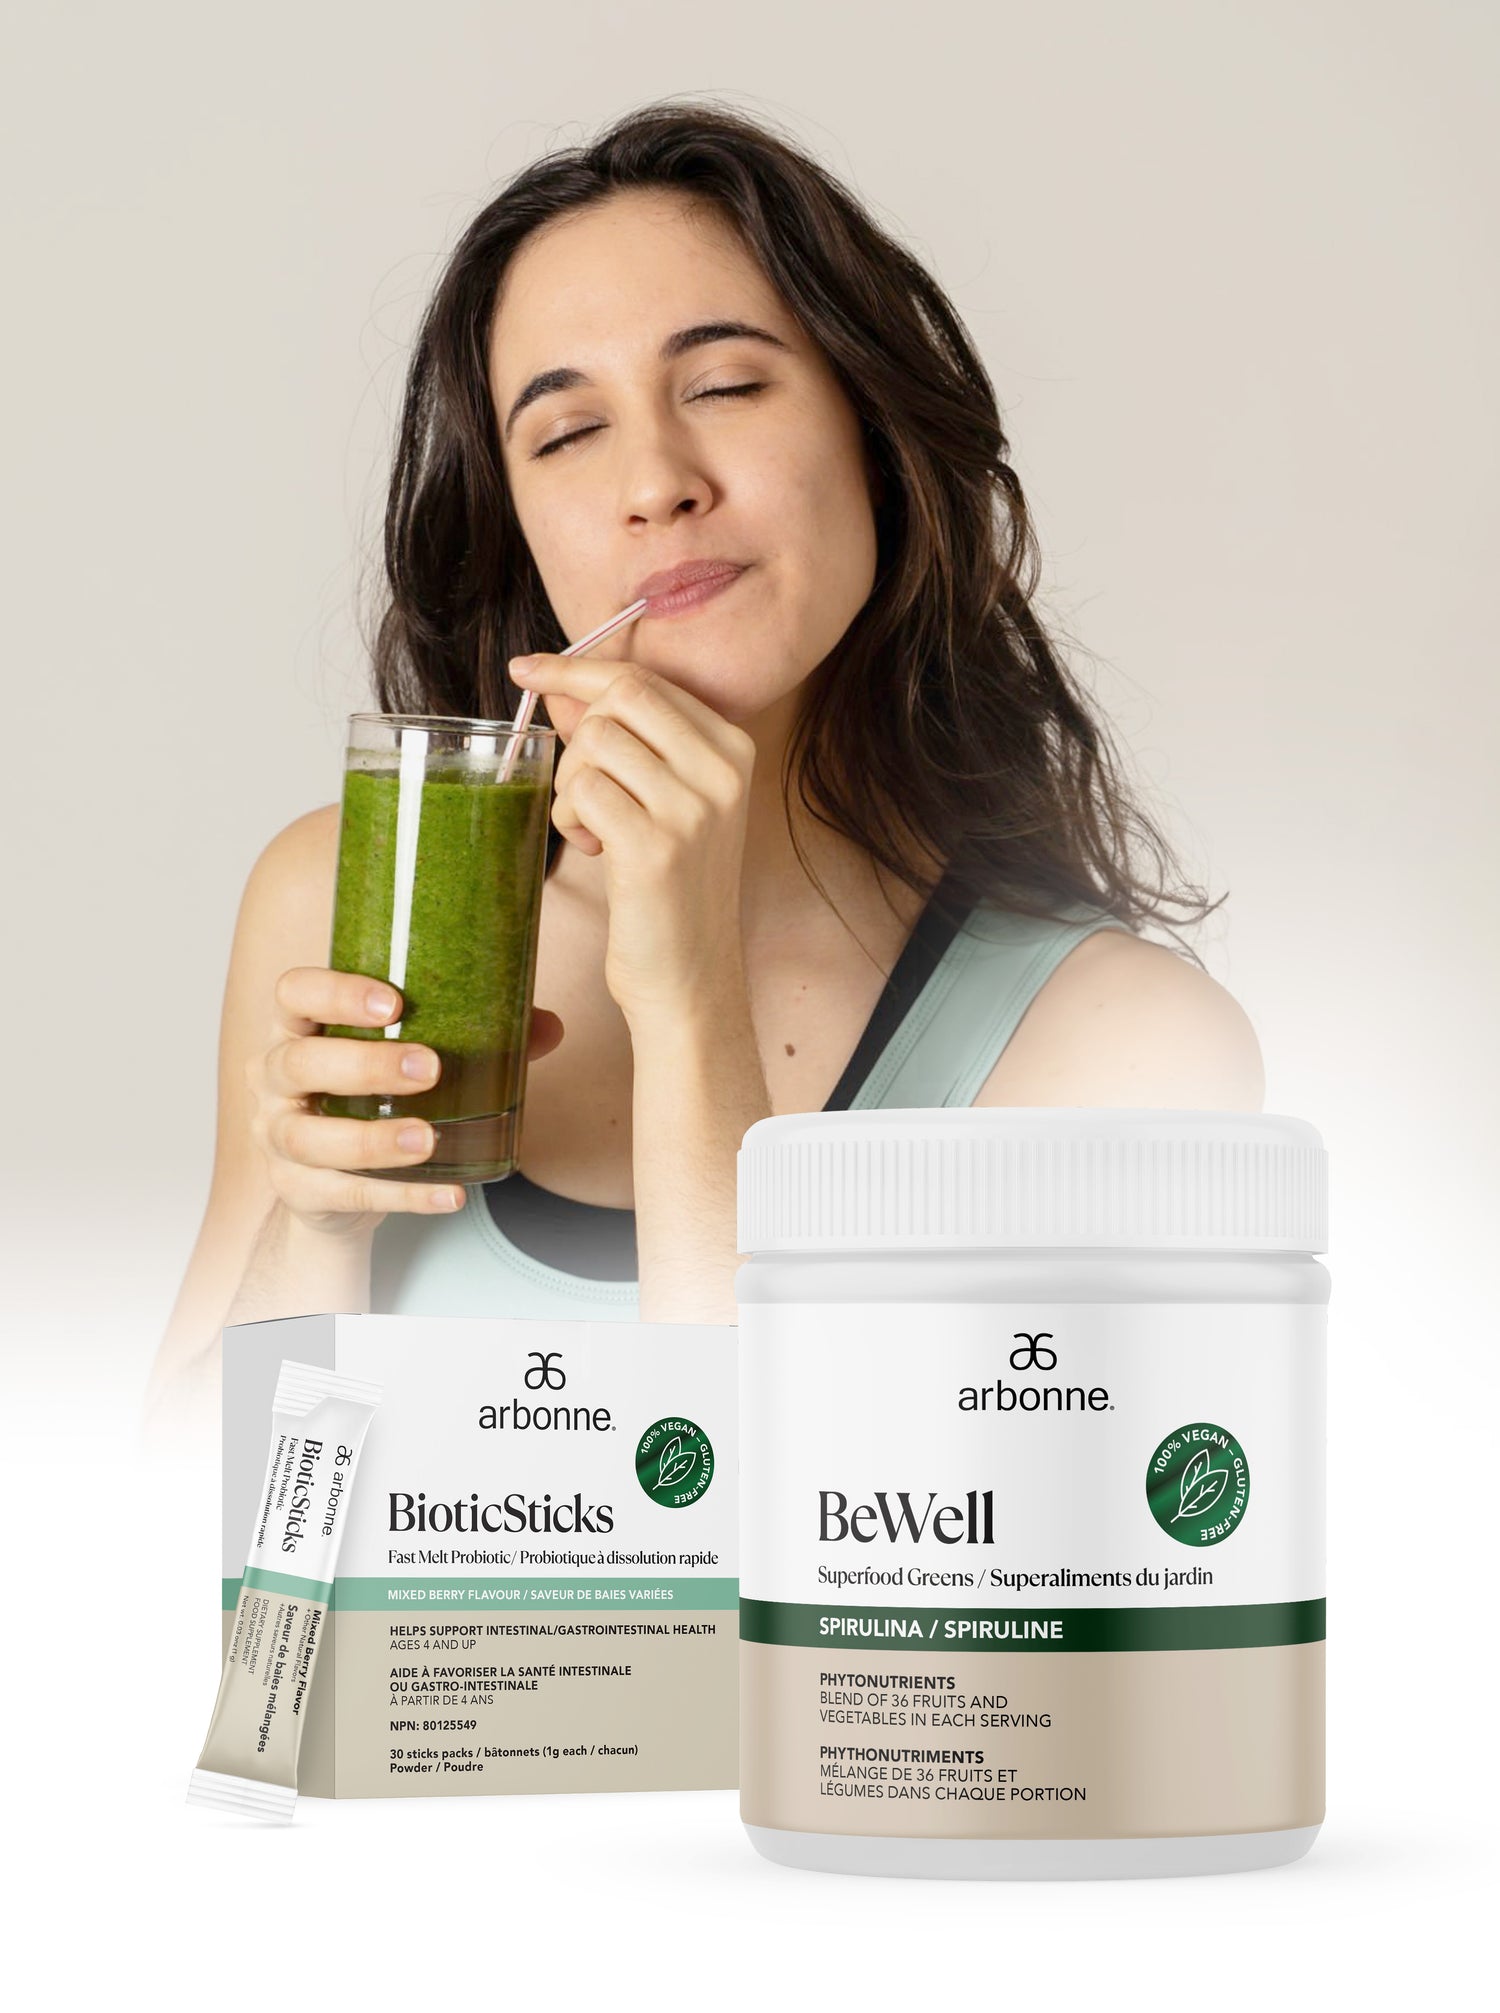 Gut Health - Women Drinking a Green Beverage